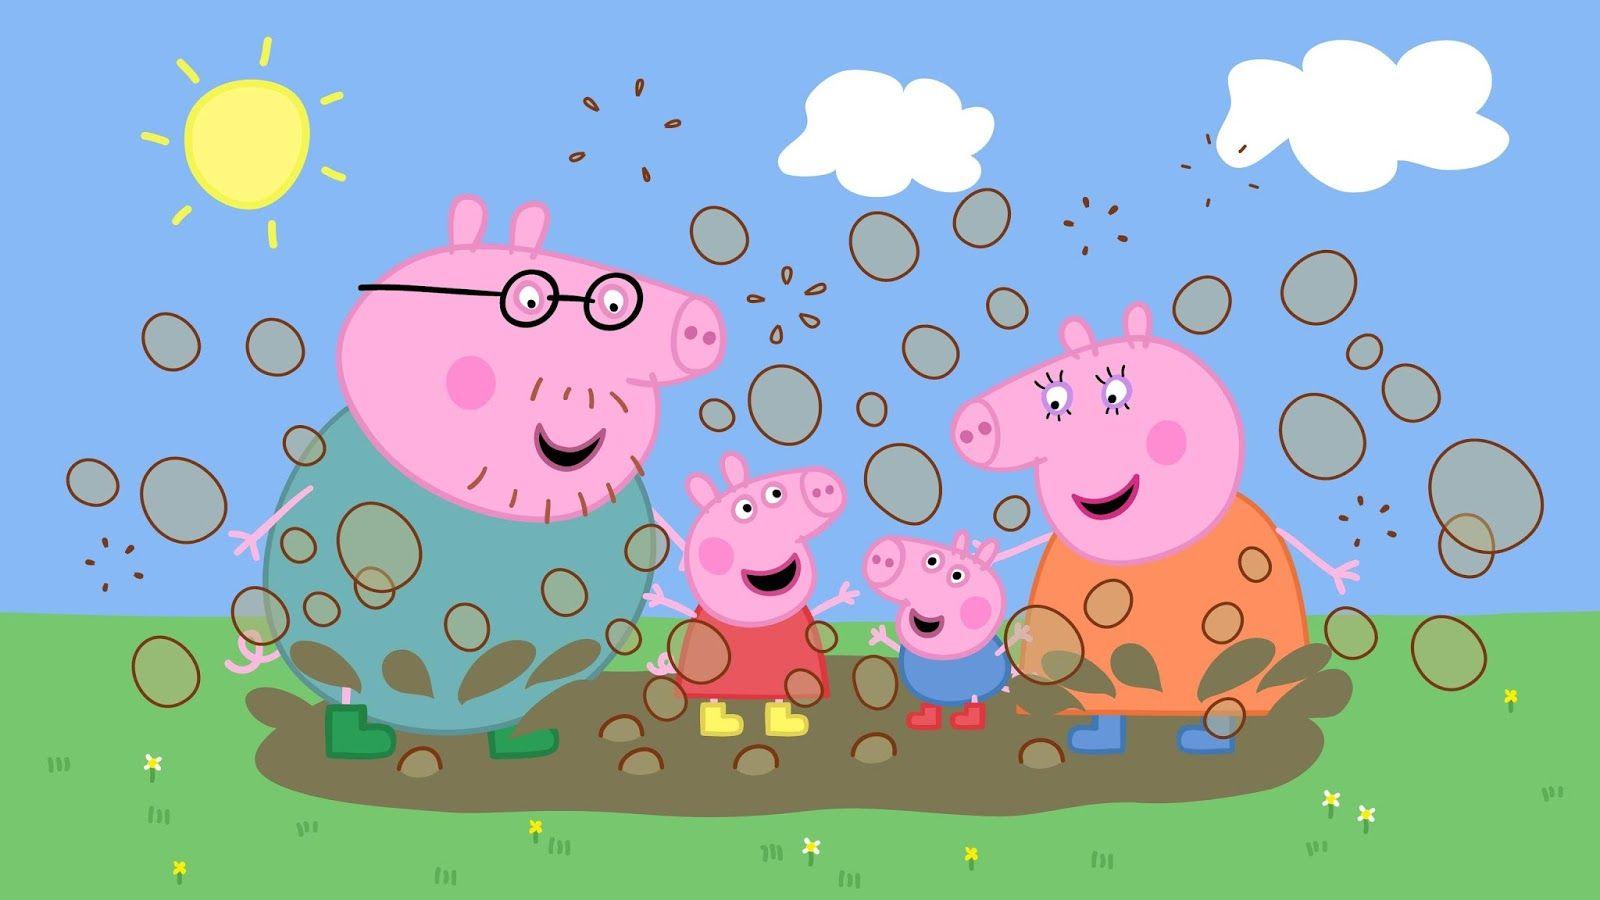 Peppa Pig HD Wallpaper. Peppa pig wallpaper, Pig wallpaper, Peppa pig cartoon